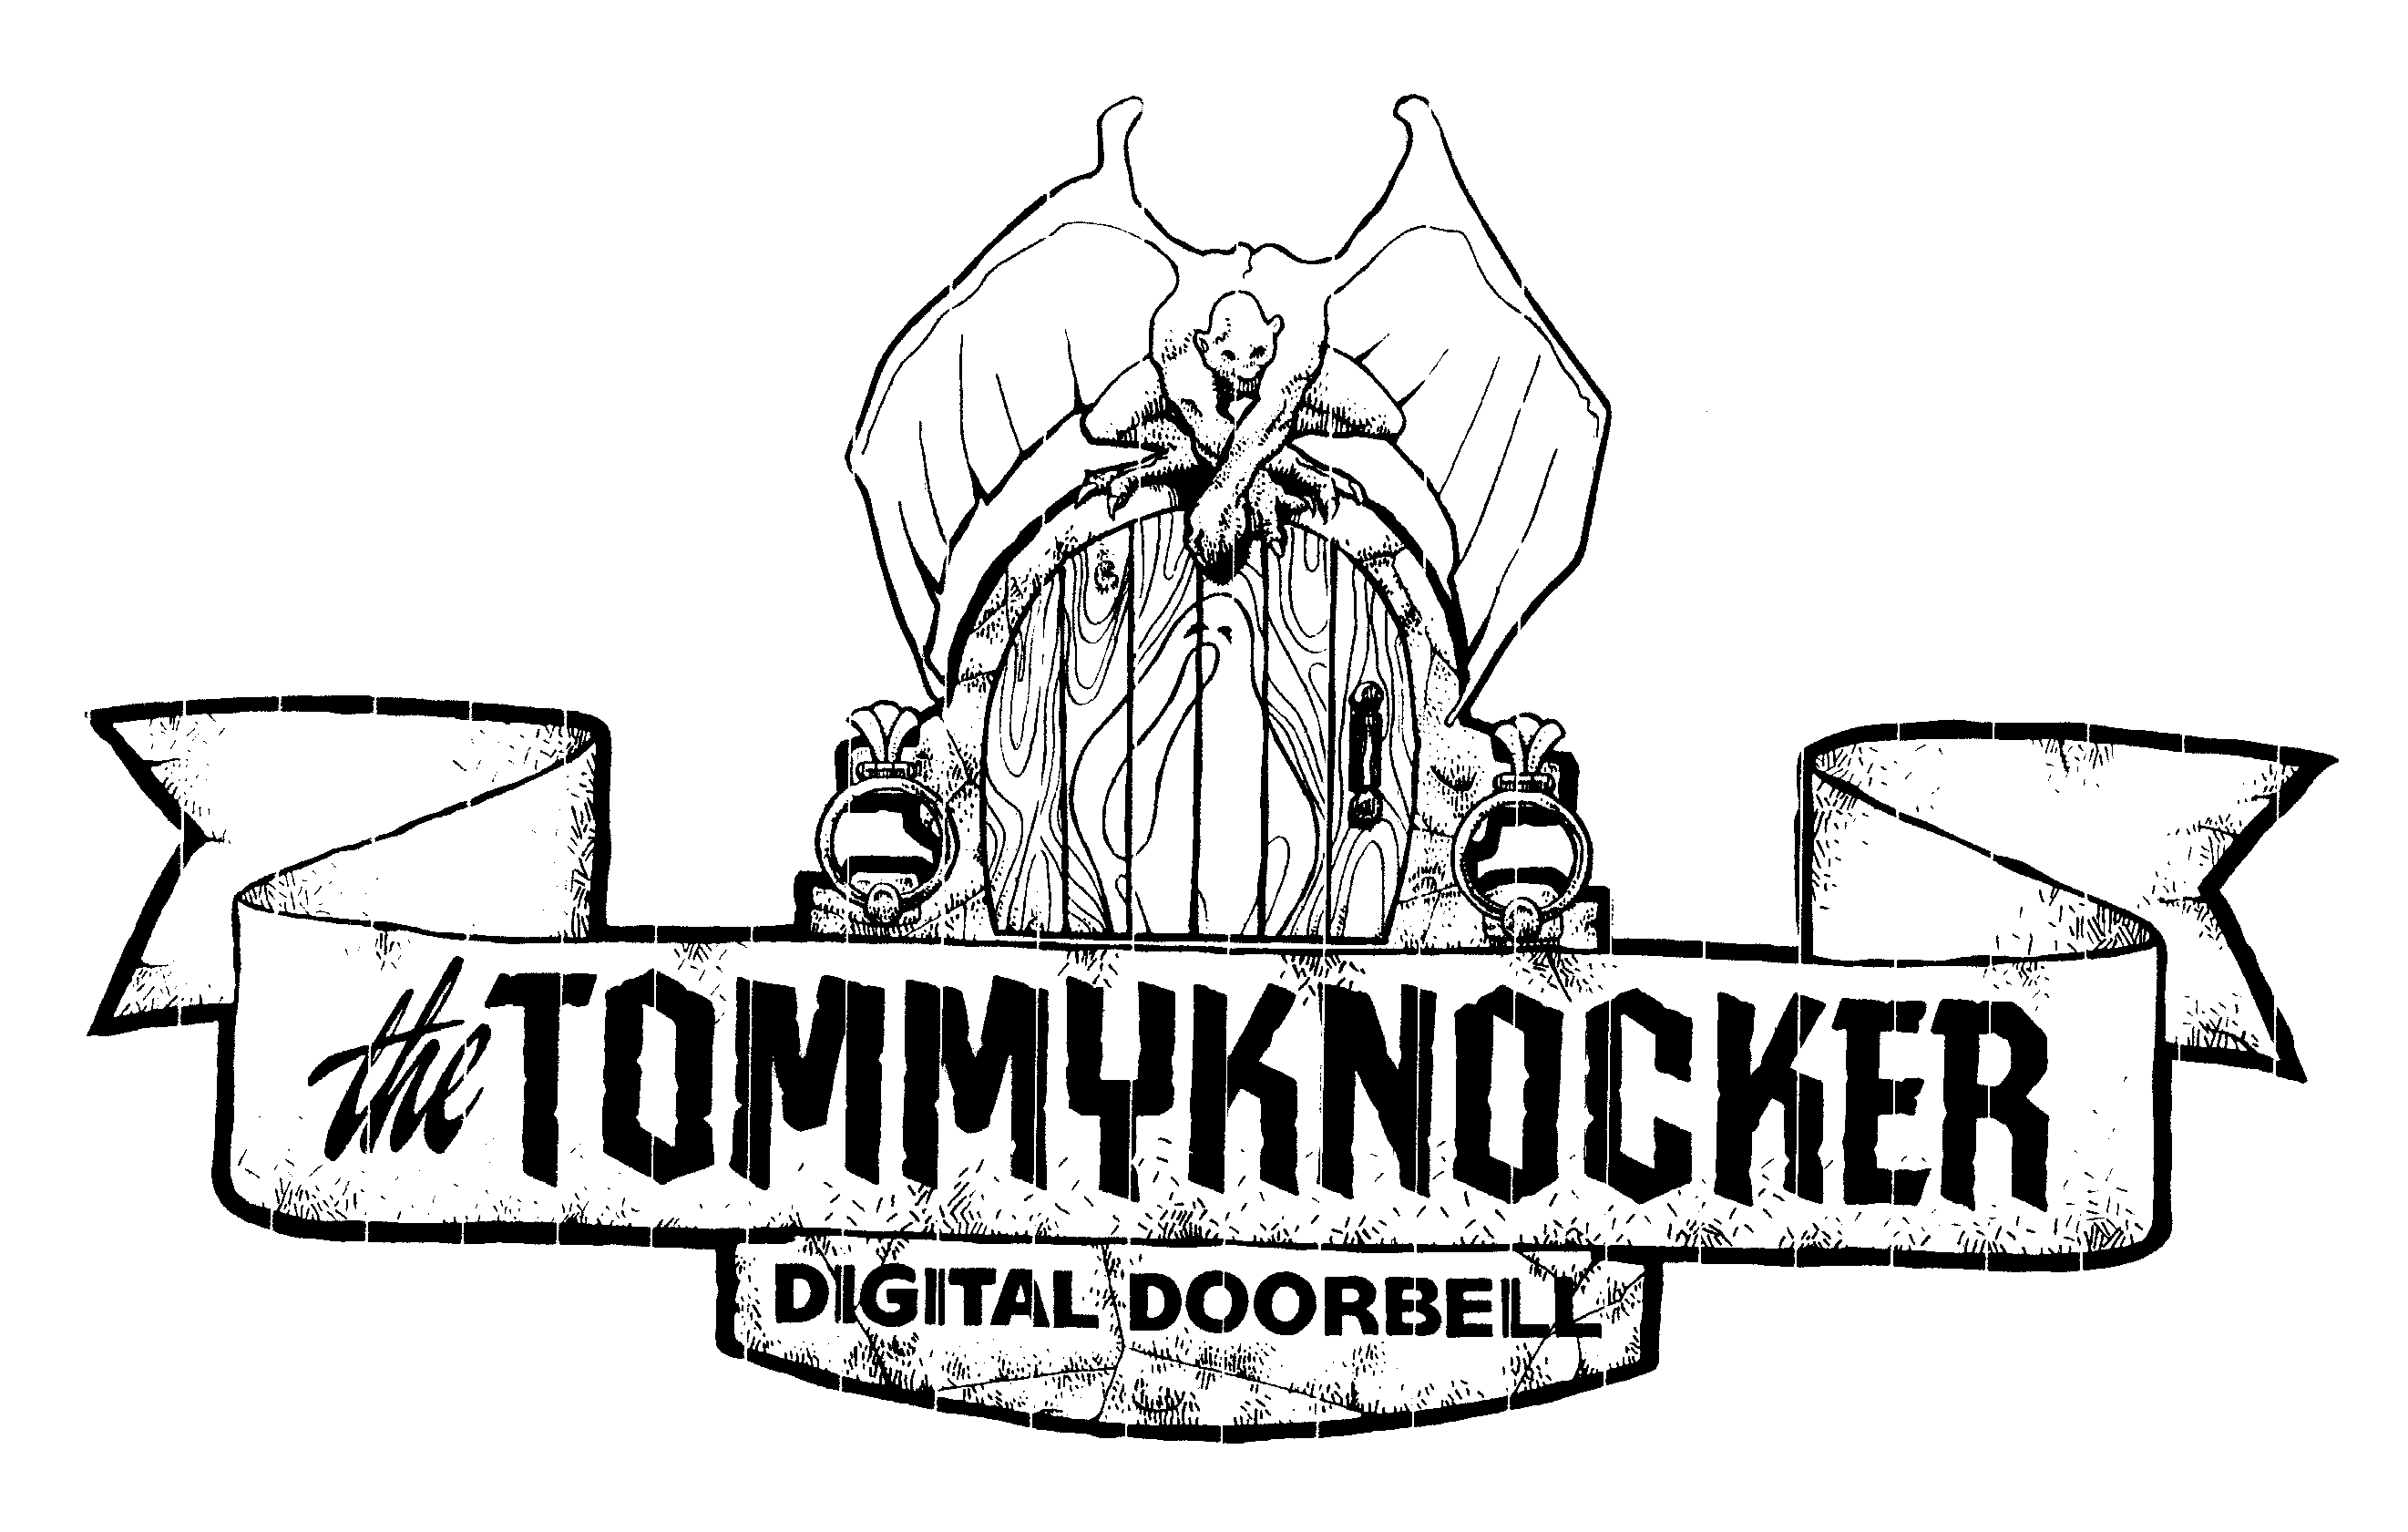  THE TOMMYKNOCKER DIGITAL DOORBELL